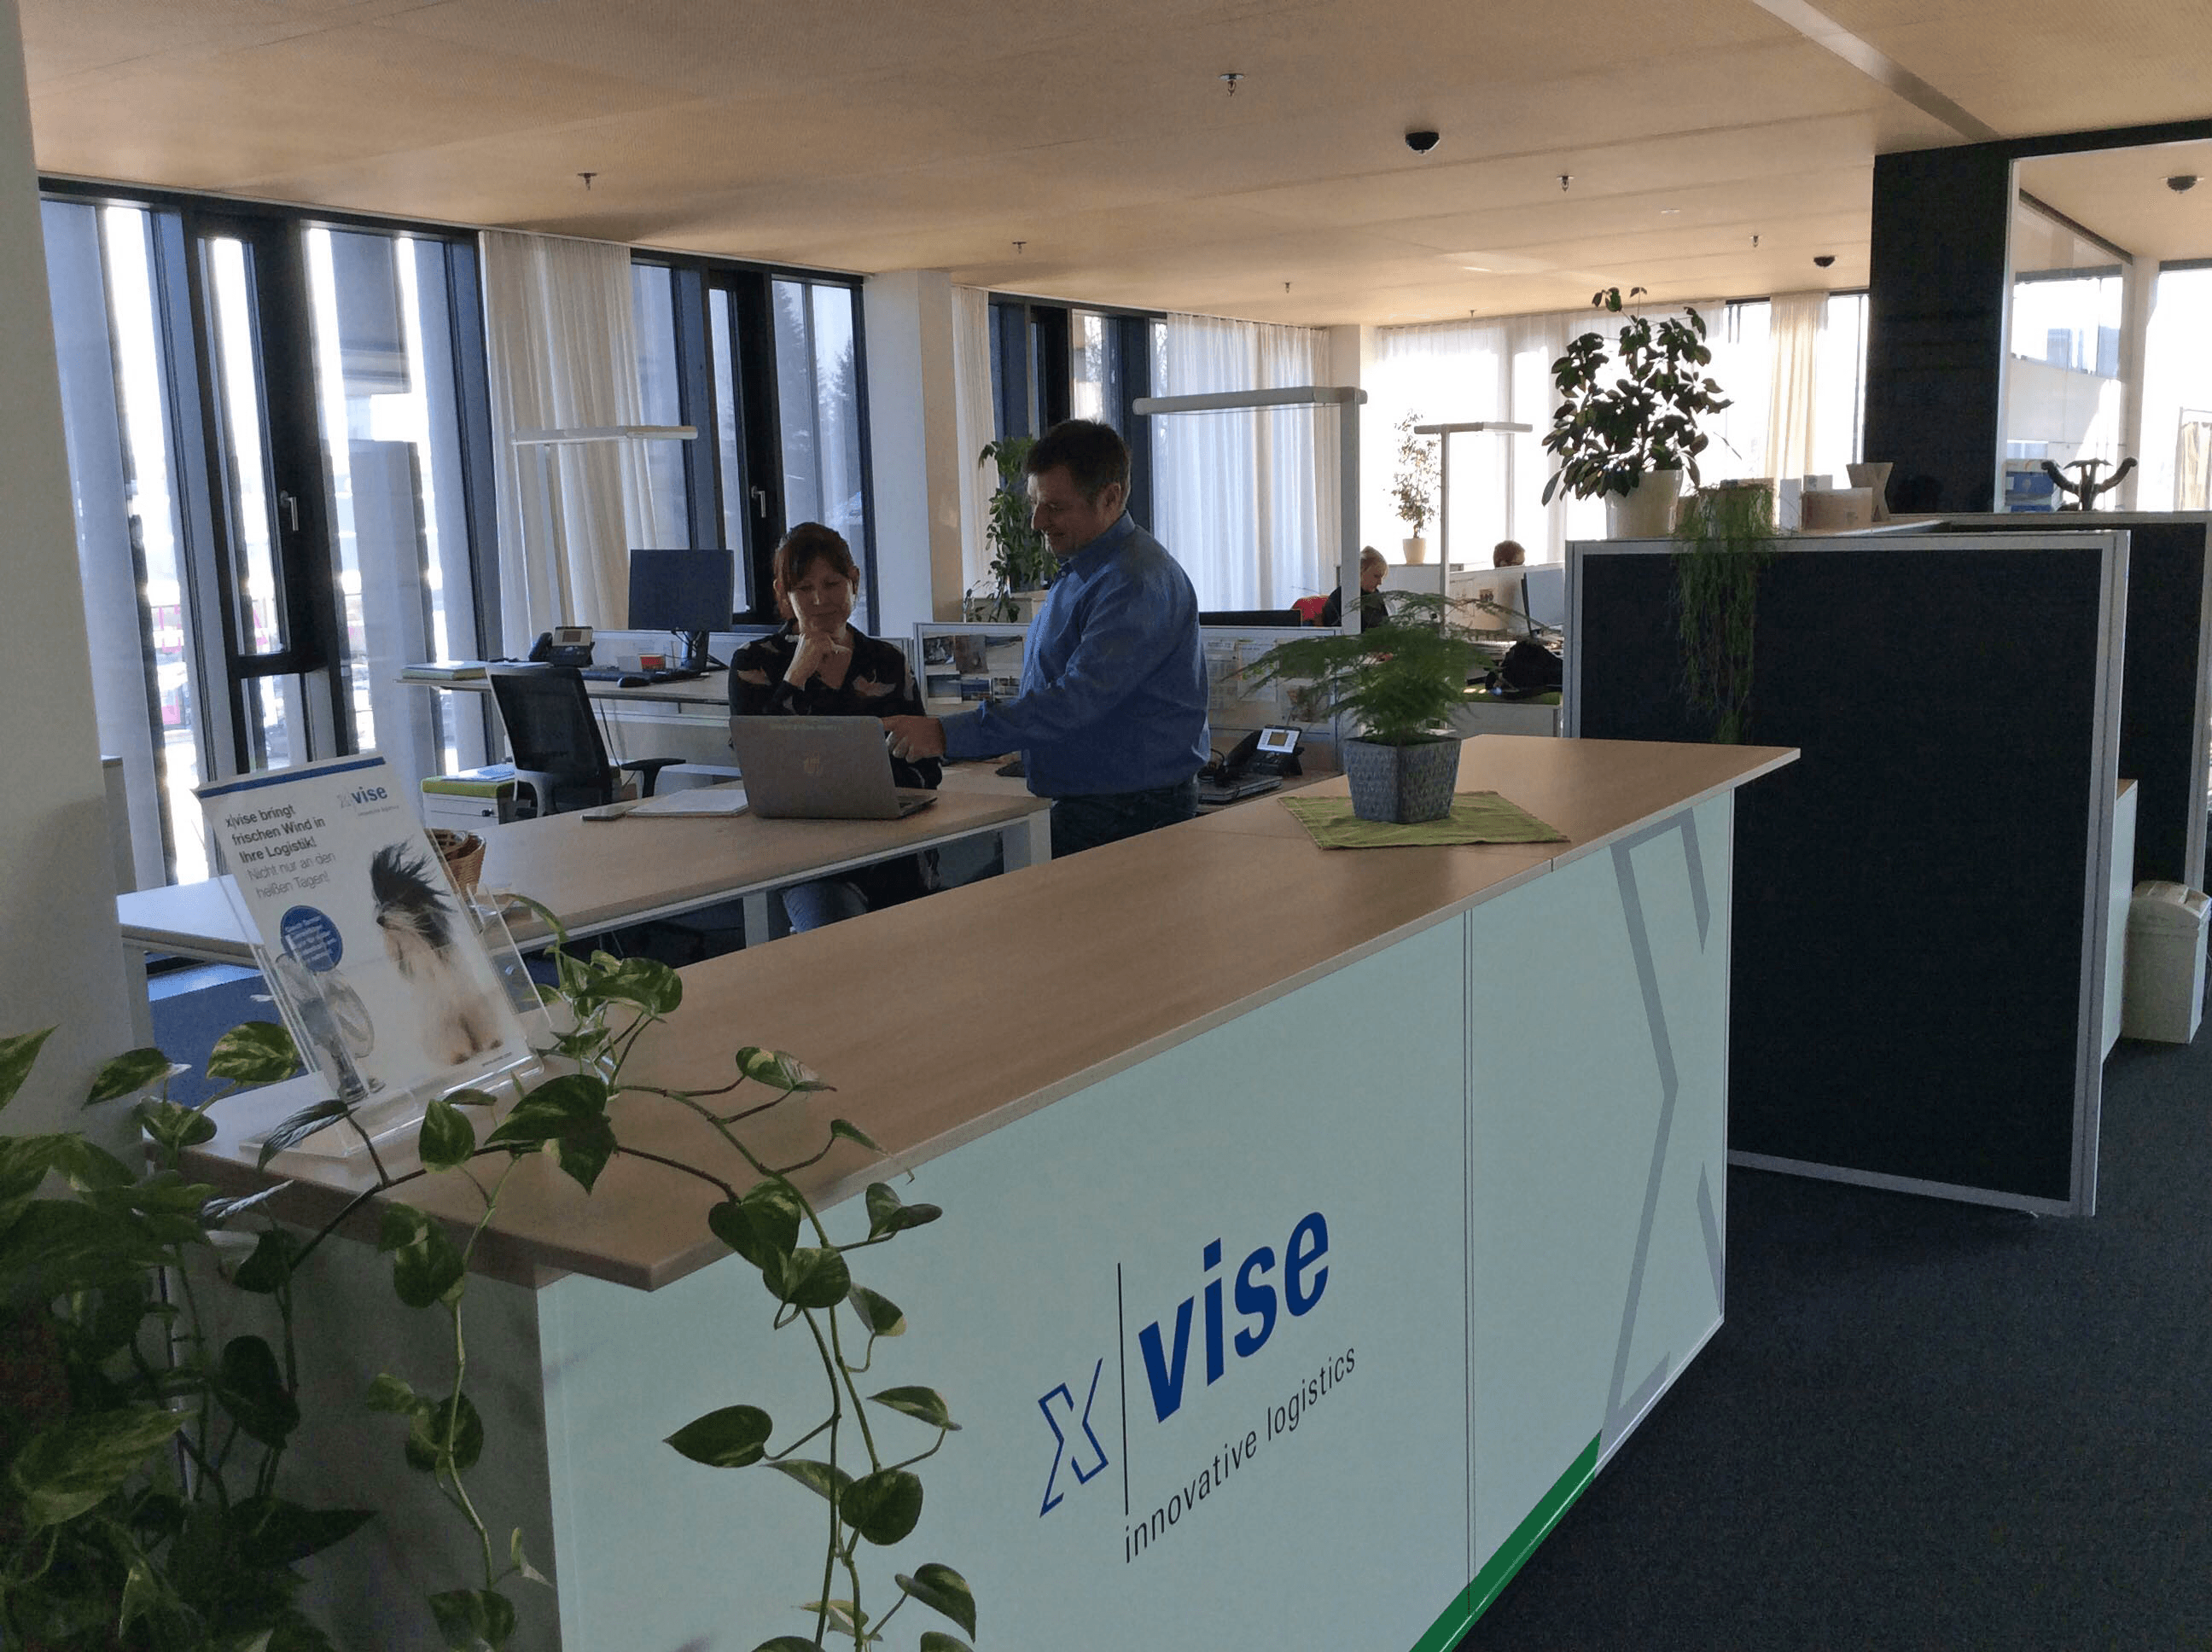 Vorschau - Foto 1 von Xvise innovative logistics GmbH